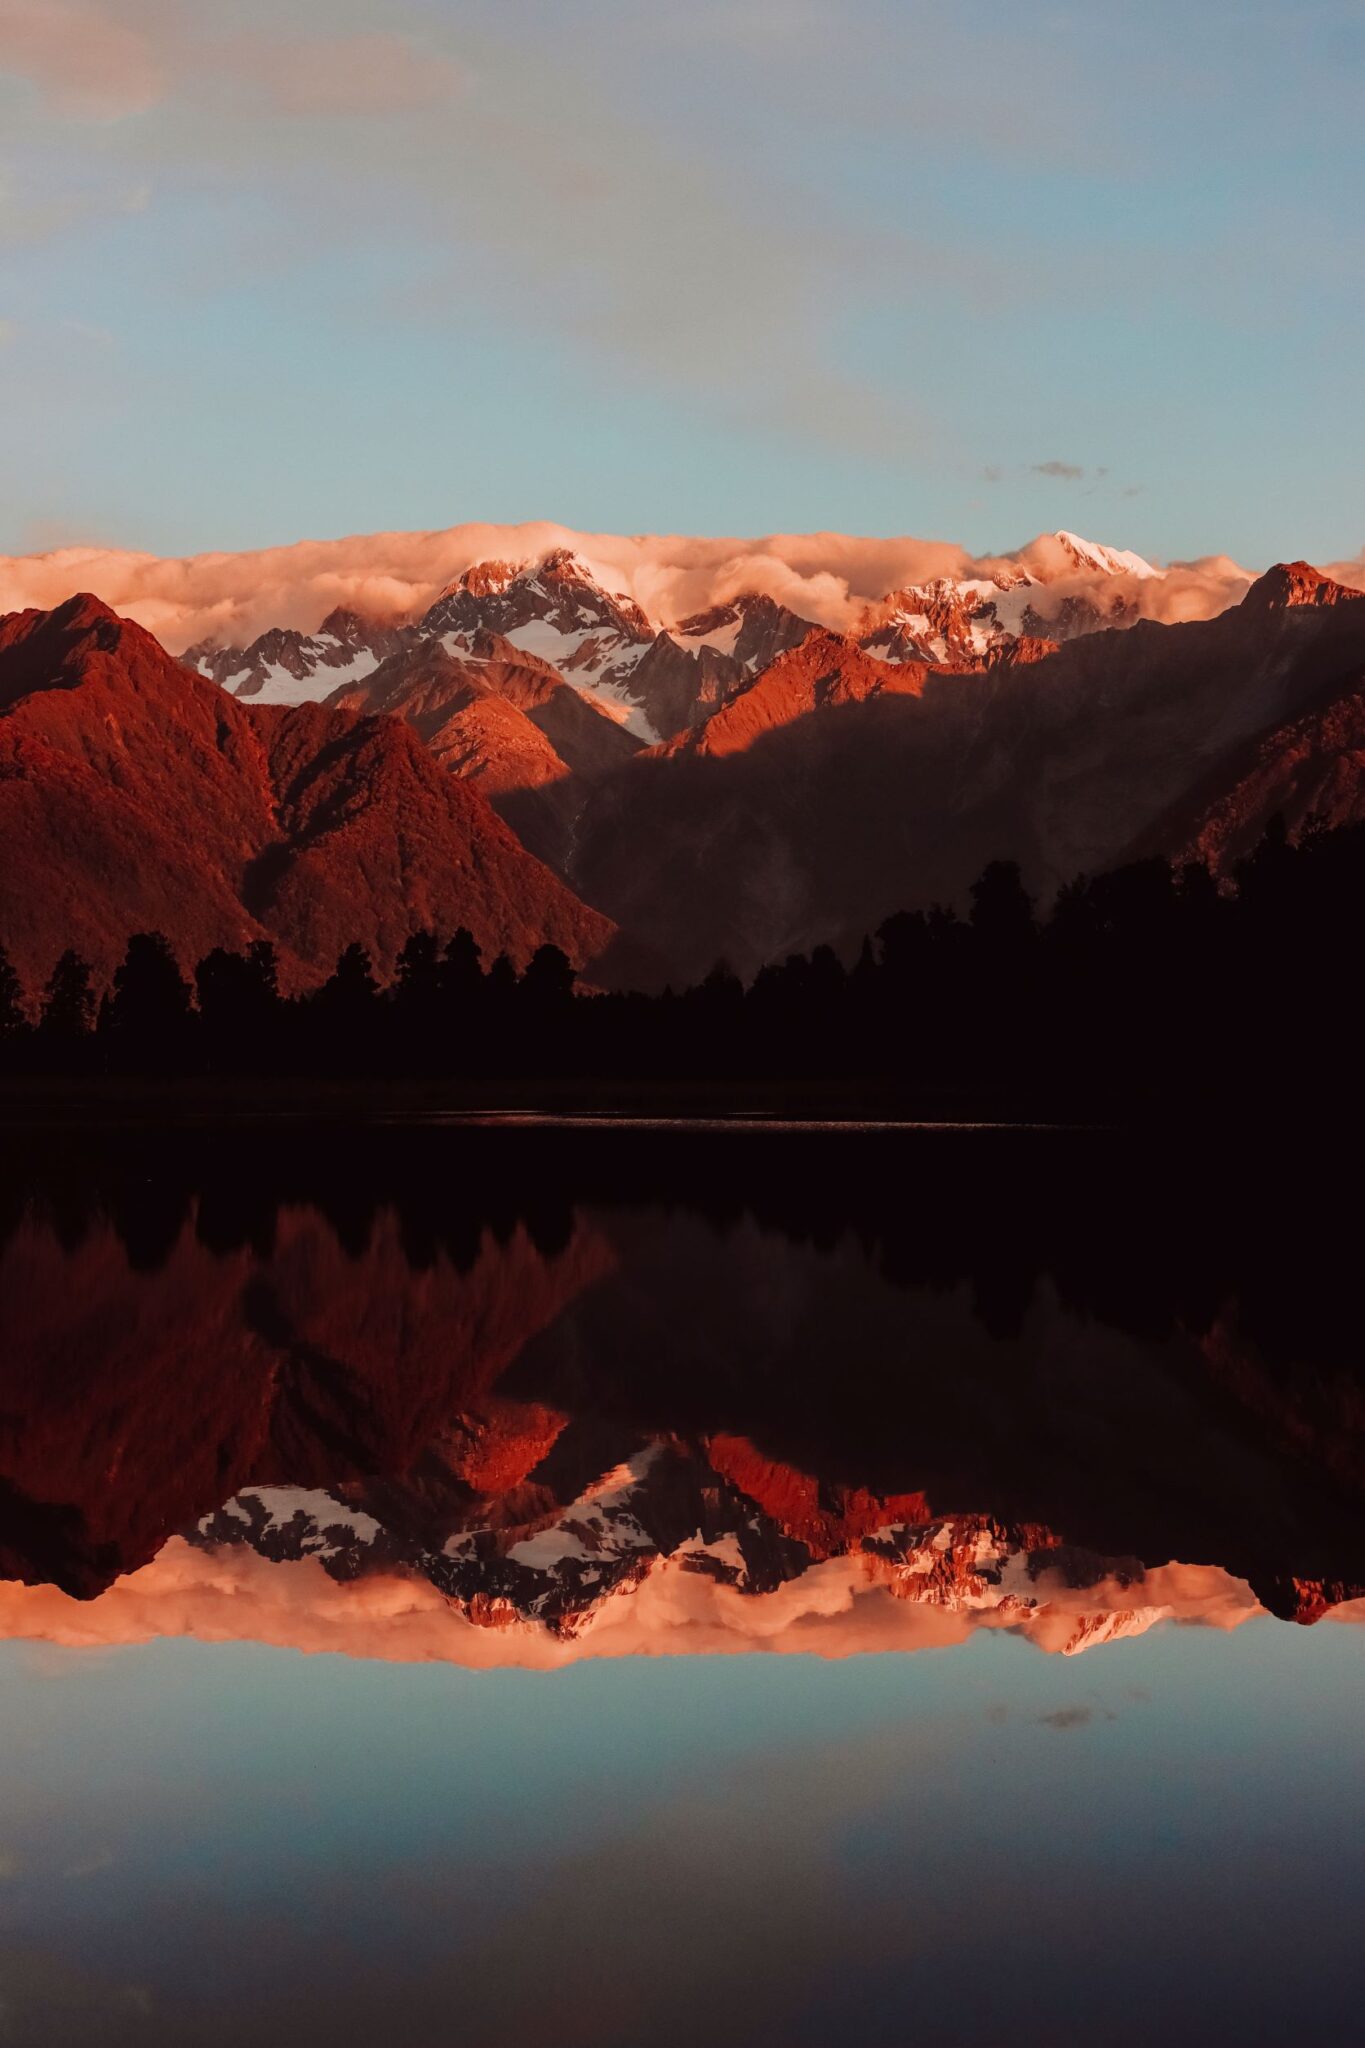 Sunset at Lake Matheson - West Coast New Zealand